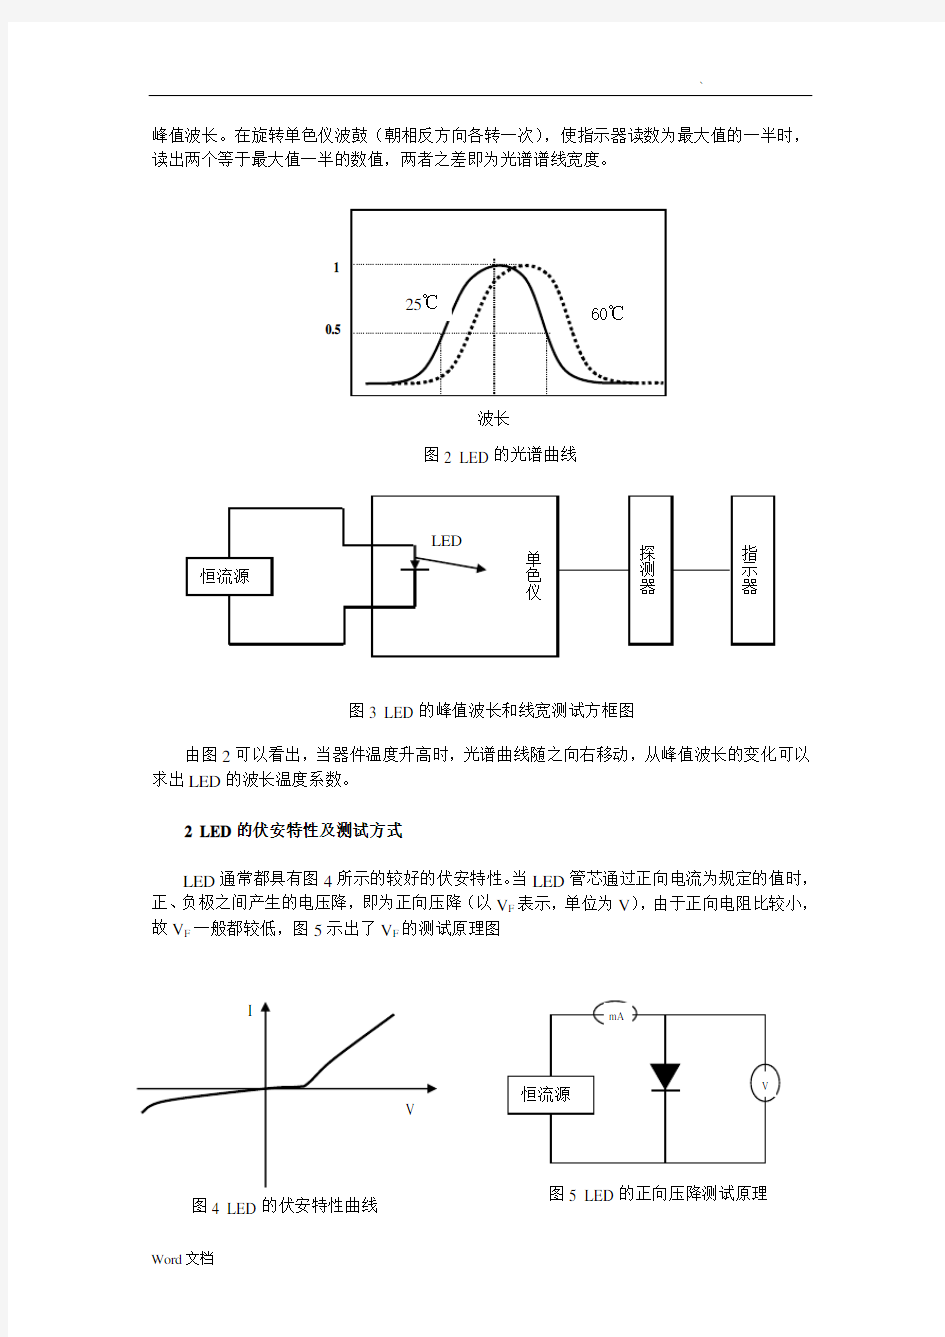 发光二极管的主要参数及测量方法